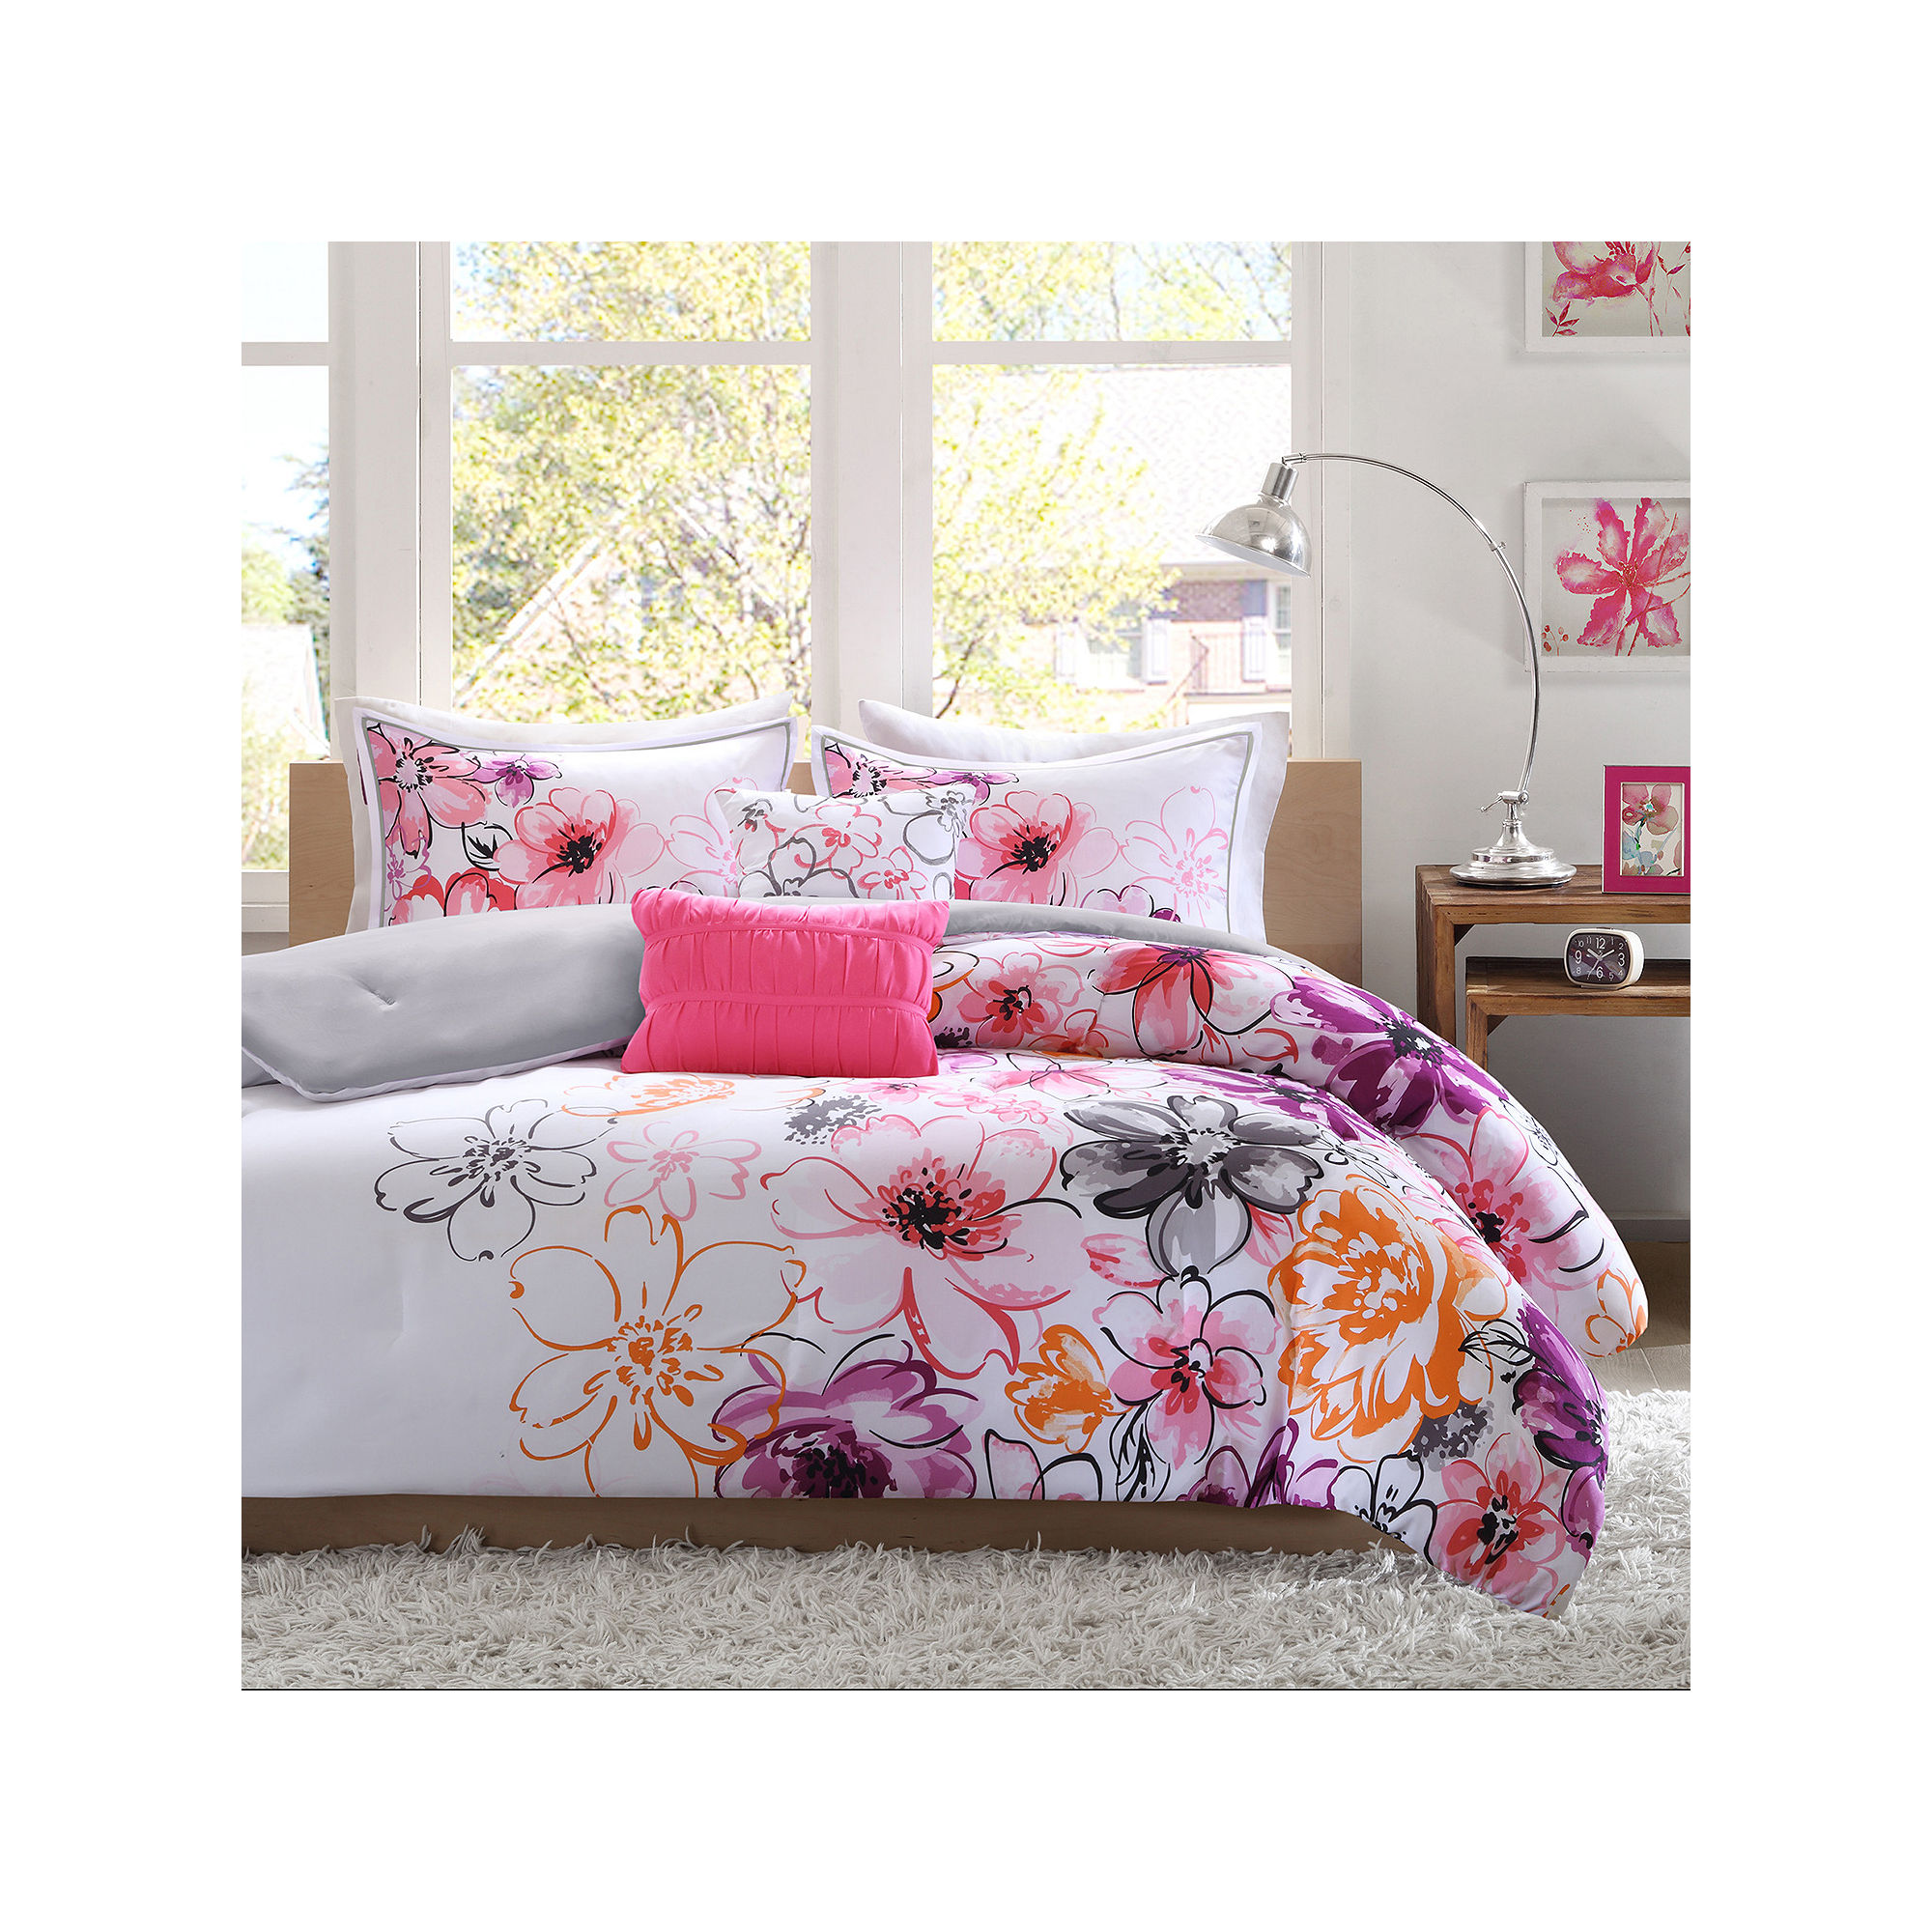 Intelligent Design Cassidy Floral Comforter Set